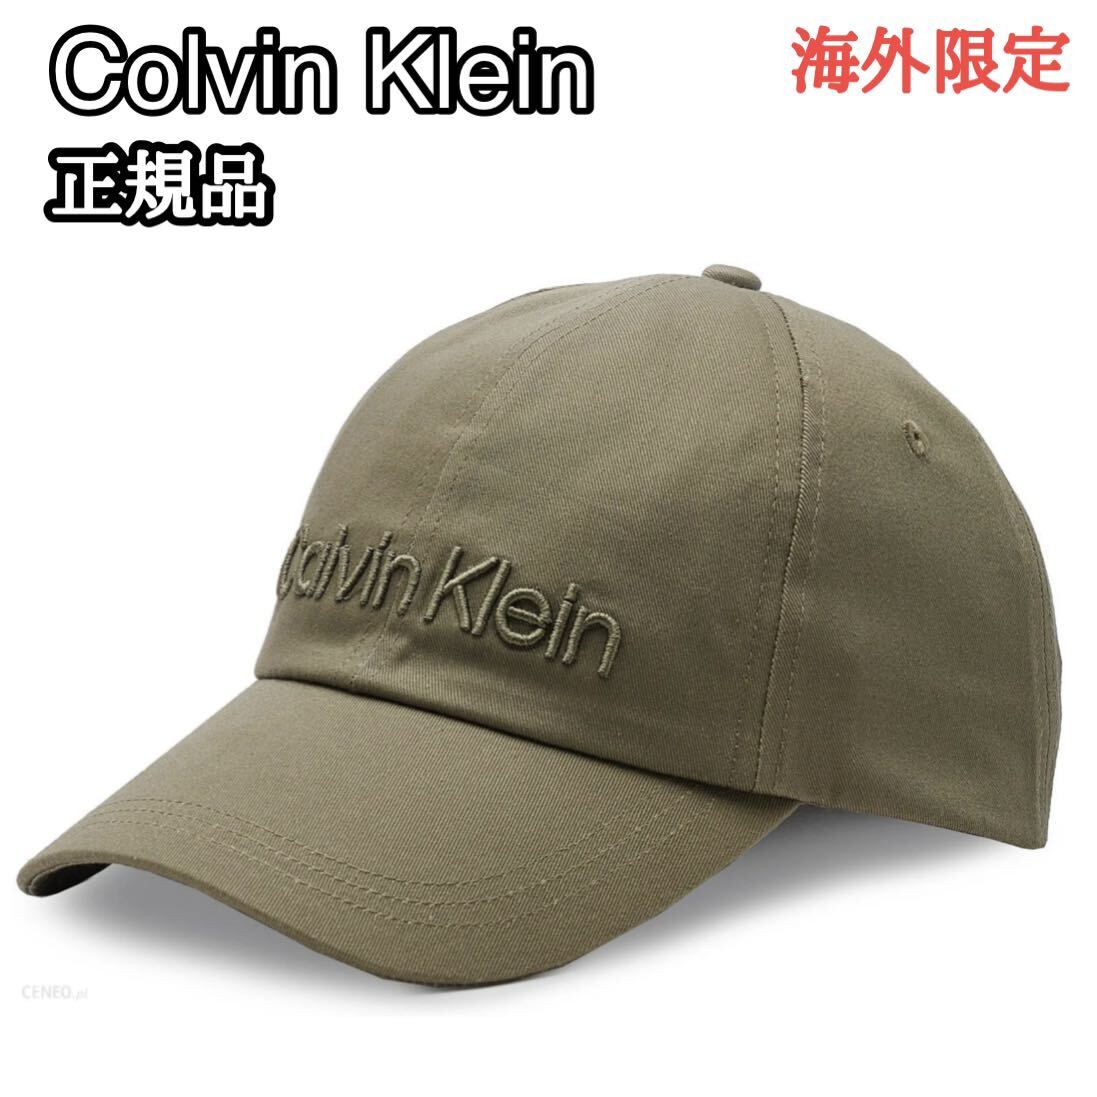 カルバンクライン キャップ 帽子 メンズ レディース 刺繍 カーキ オリーブ Calvin Klein 男女兼用 シンプル _画像1